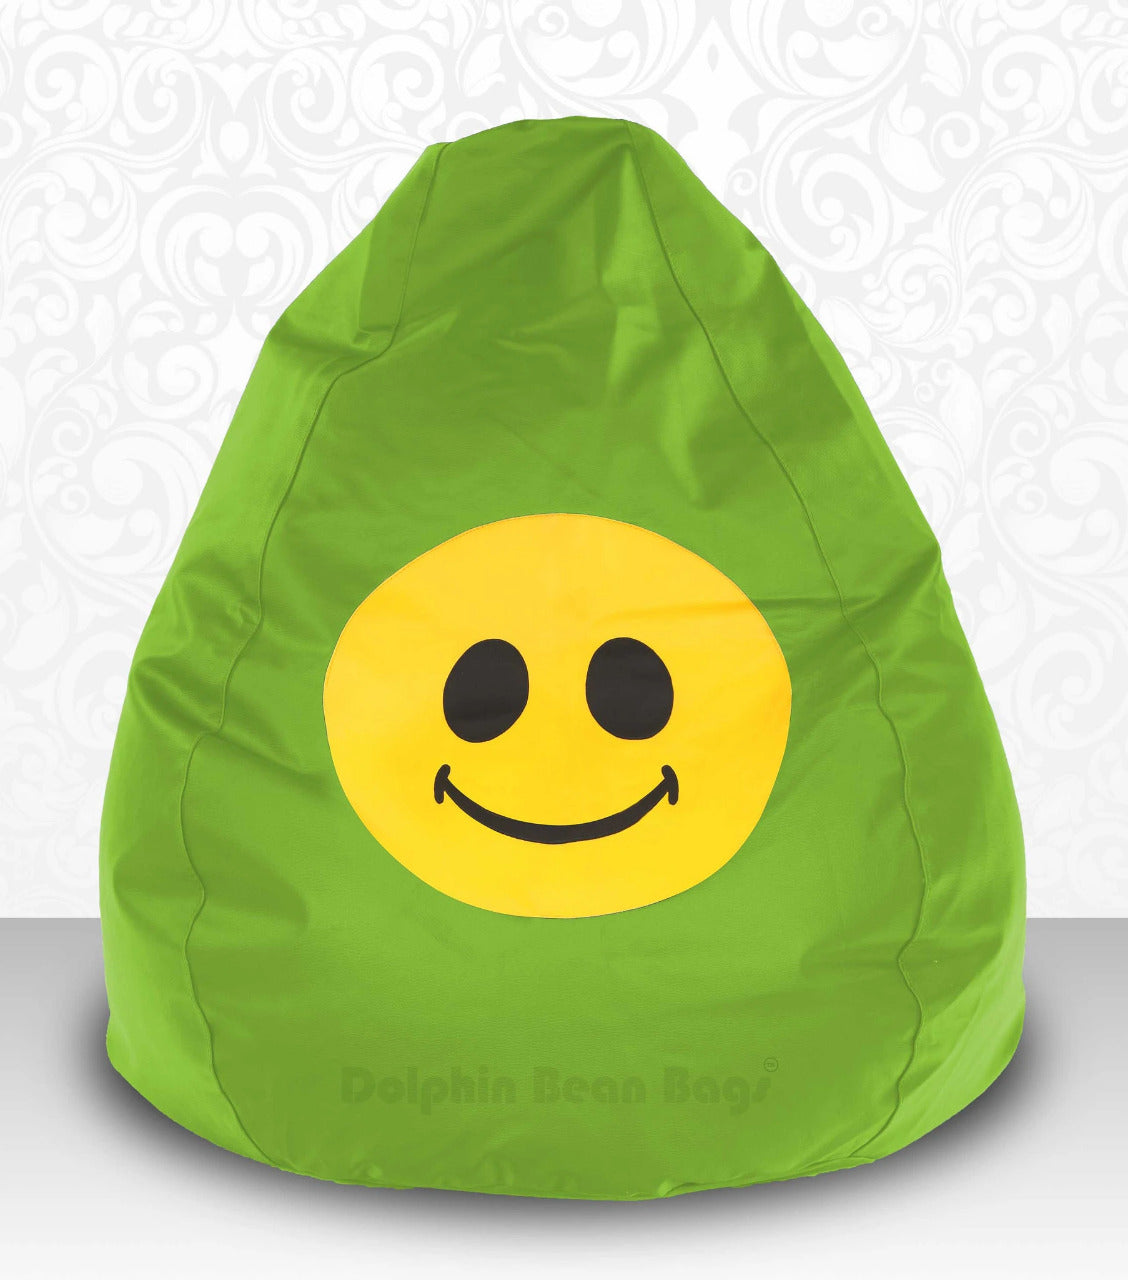 Bean Bag : XXXL Bean Bag Cute-Smiley-FILLED (with Beans)